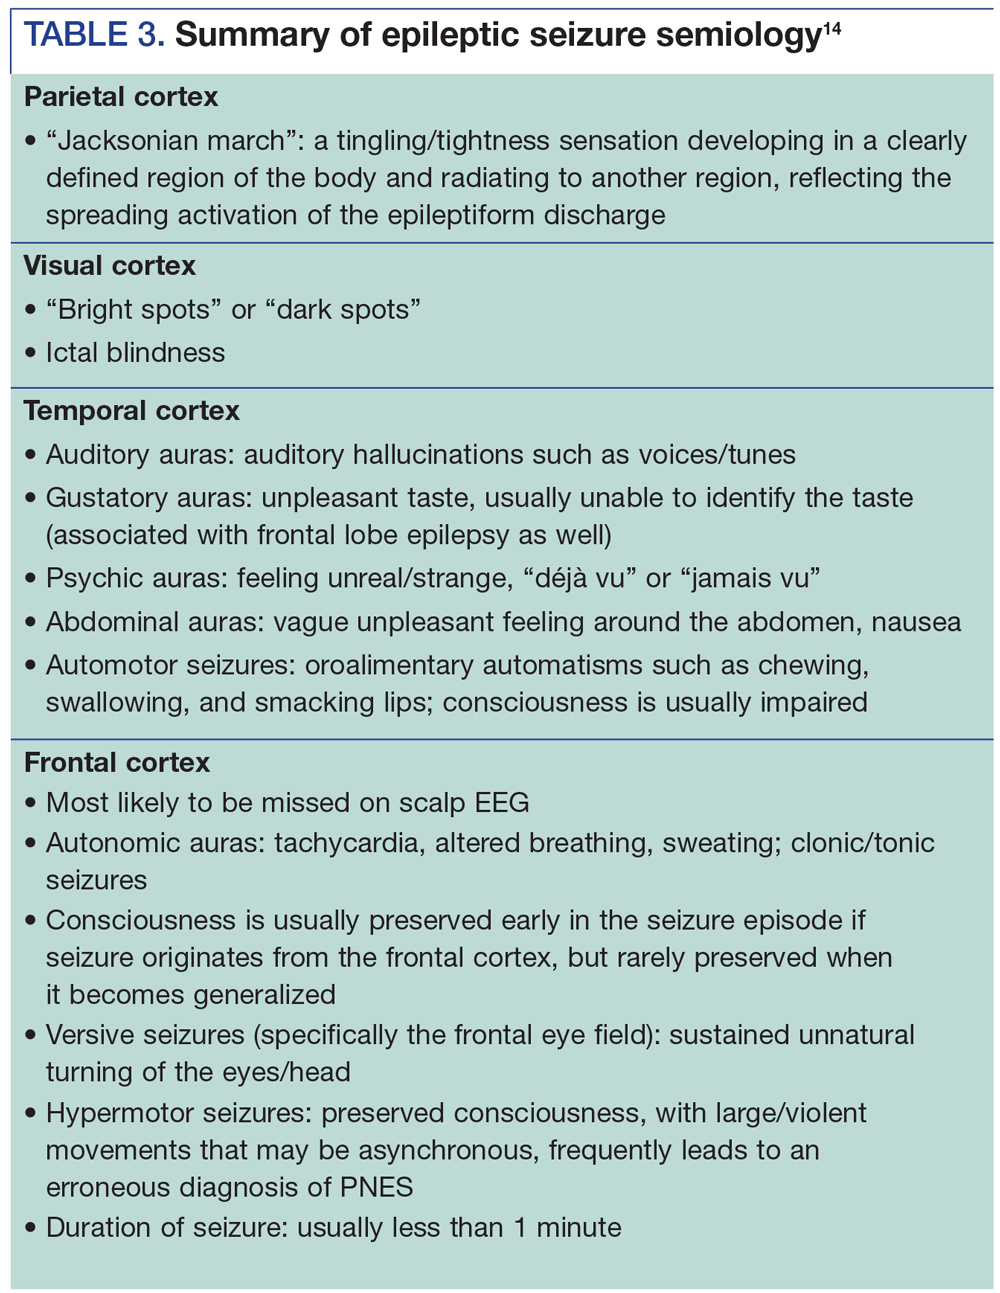 Summary of epileptic seizure semiology